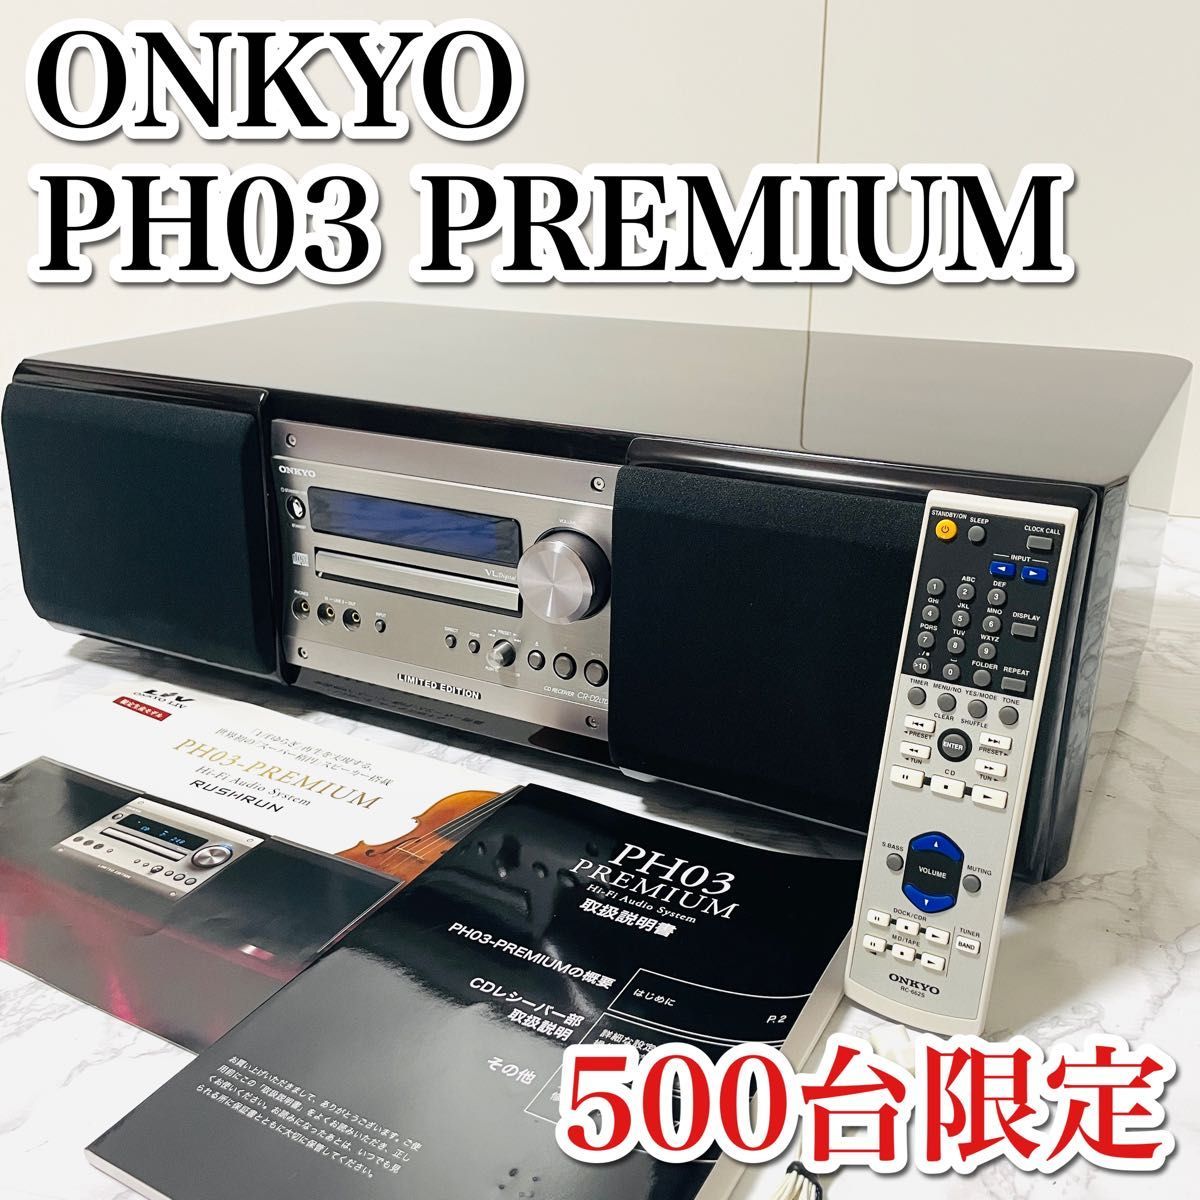 新しい到着 オーディオシステム Hi-Fi PREMIUM PH03 オンキョー ONKYO